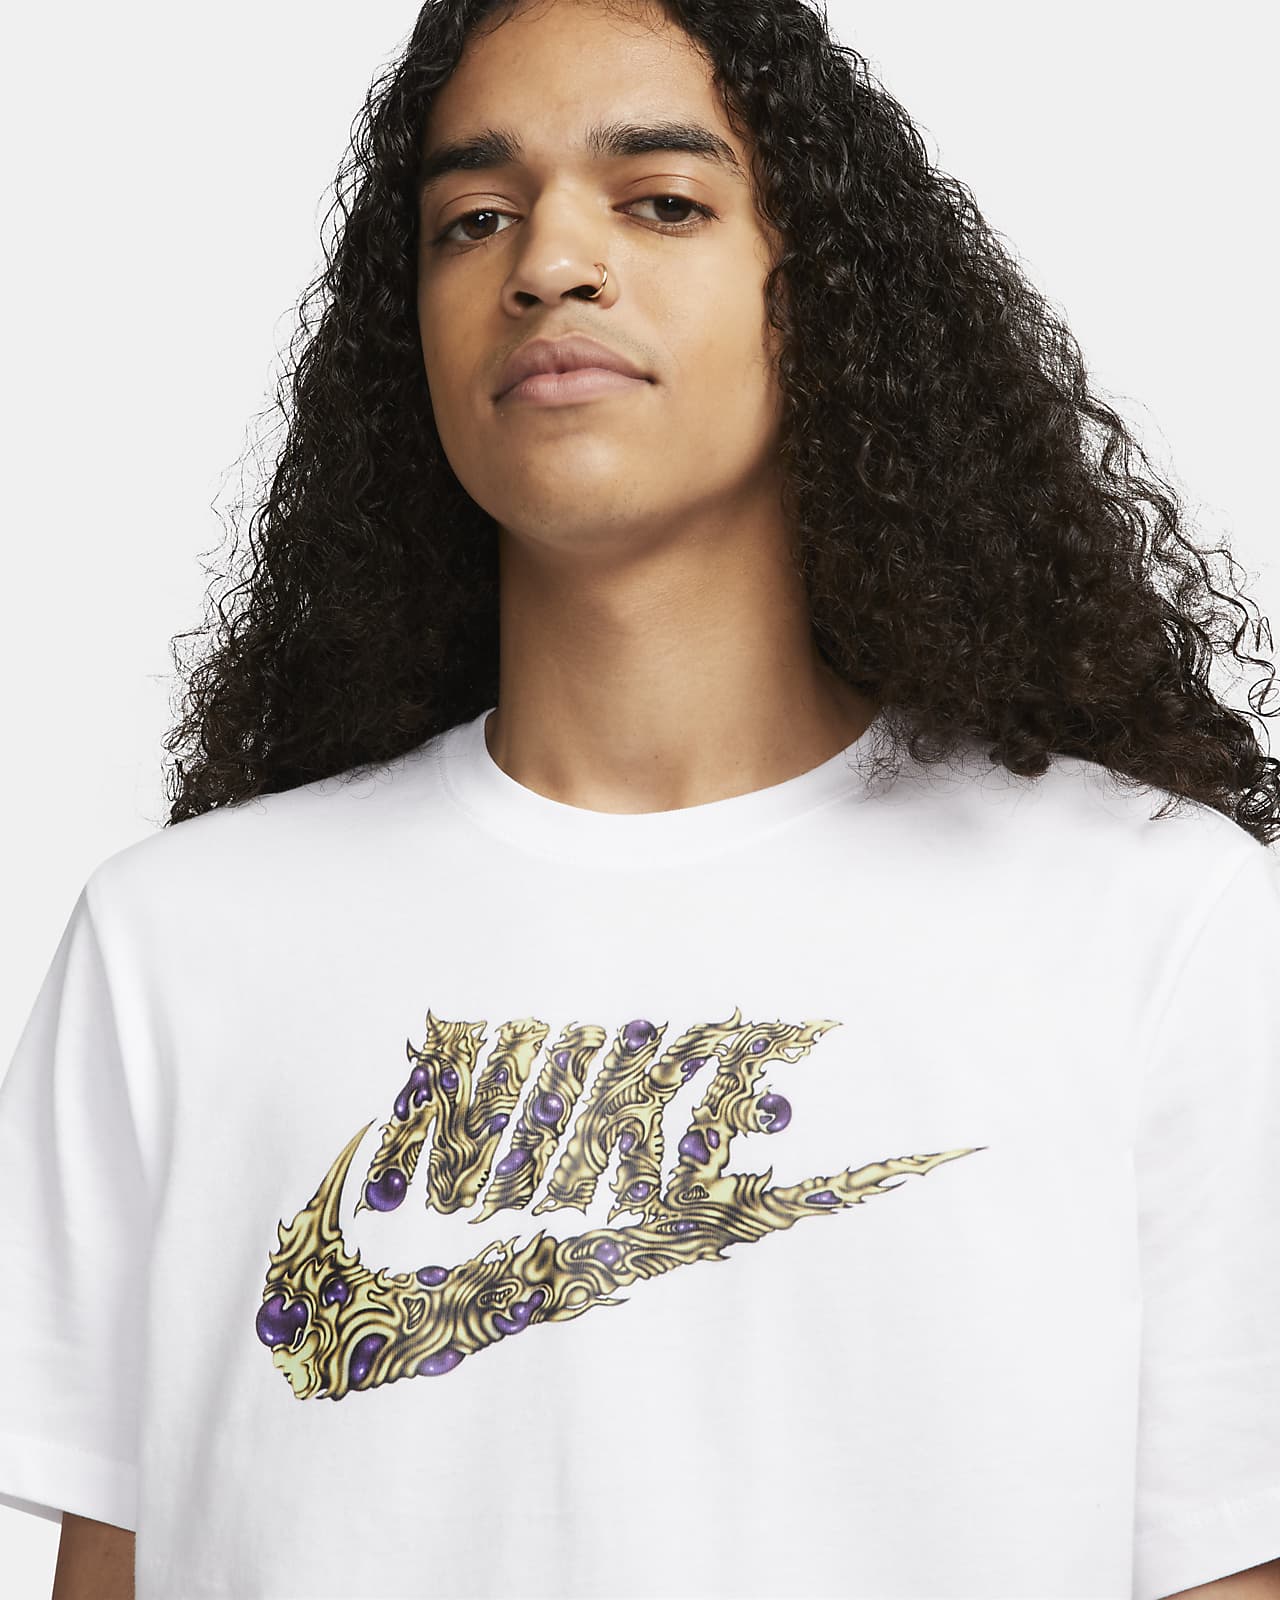 Nike T-Shirt. Sportswear Men\'s